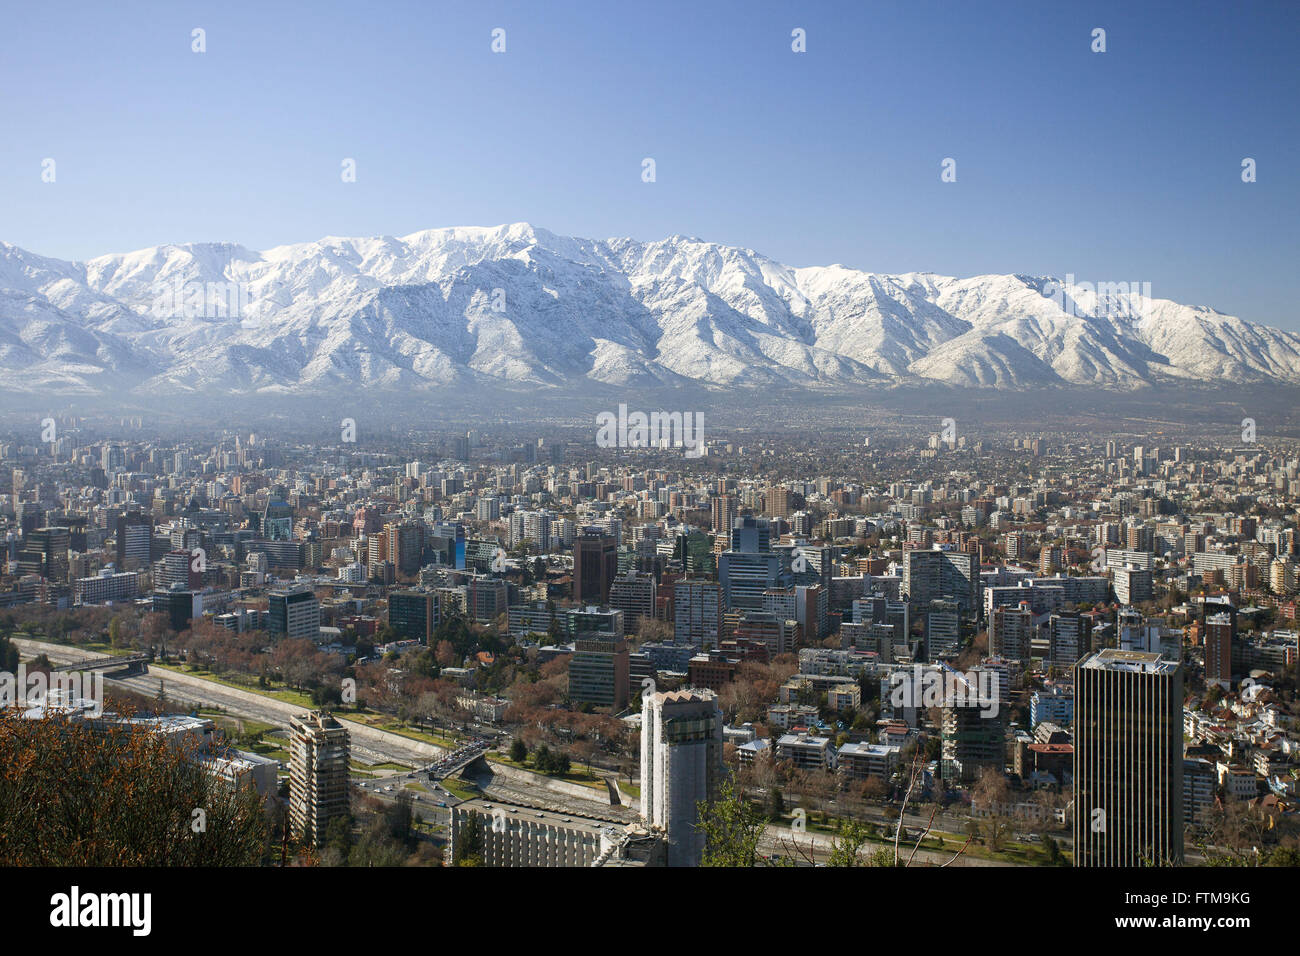 Vue de la ville de Santiago avec les Andes en arrière-plan - Chili Banque D'Images